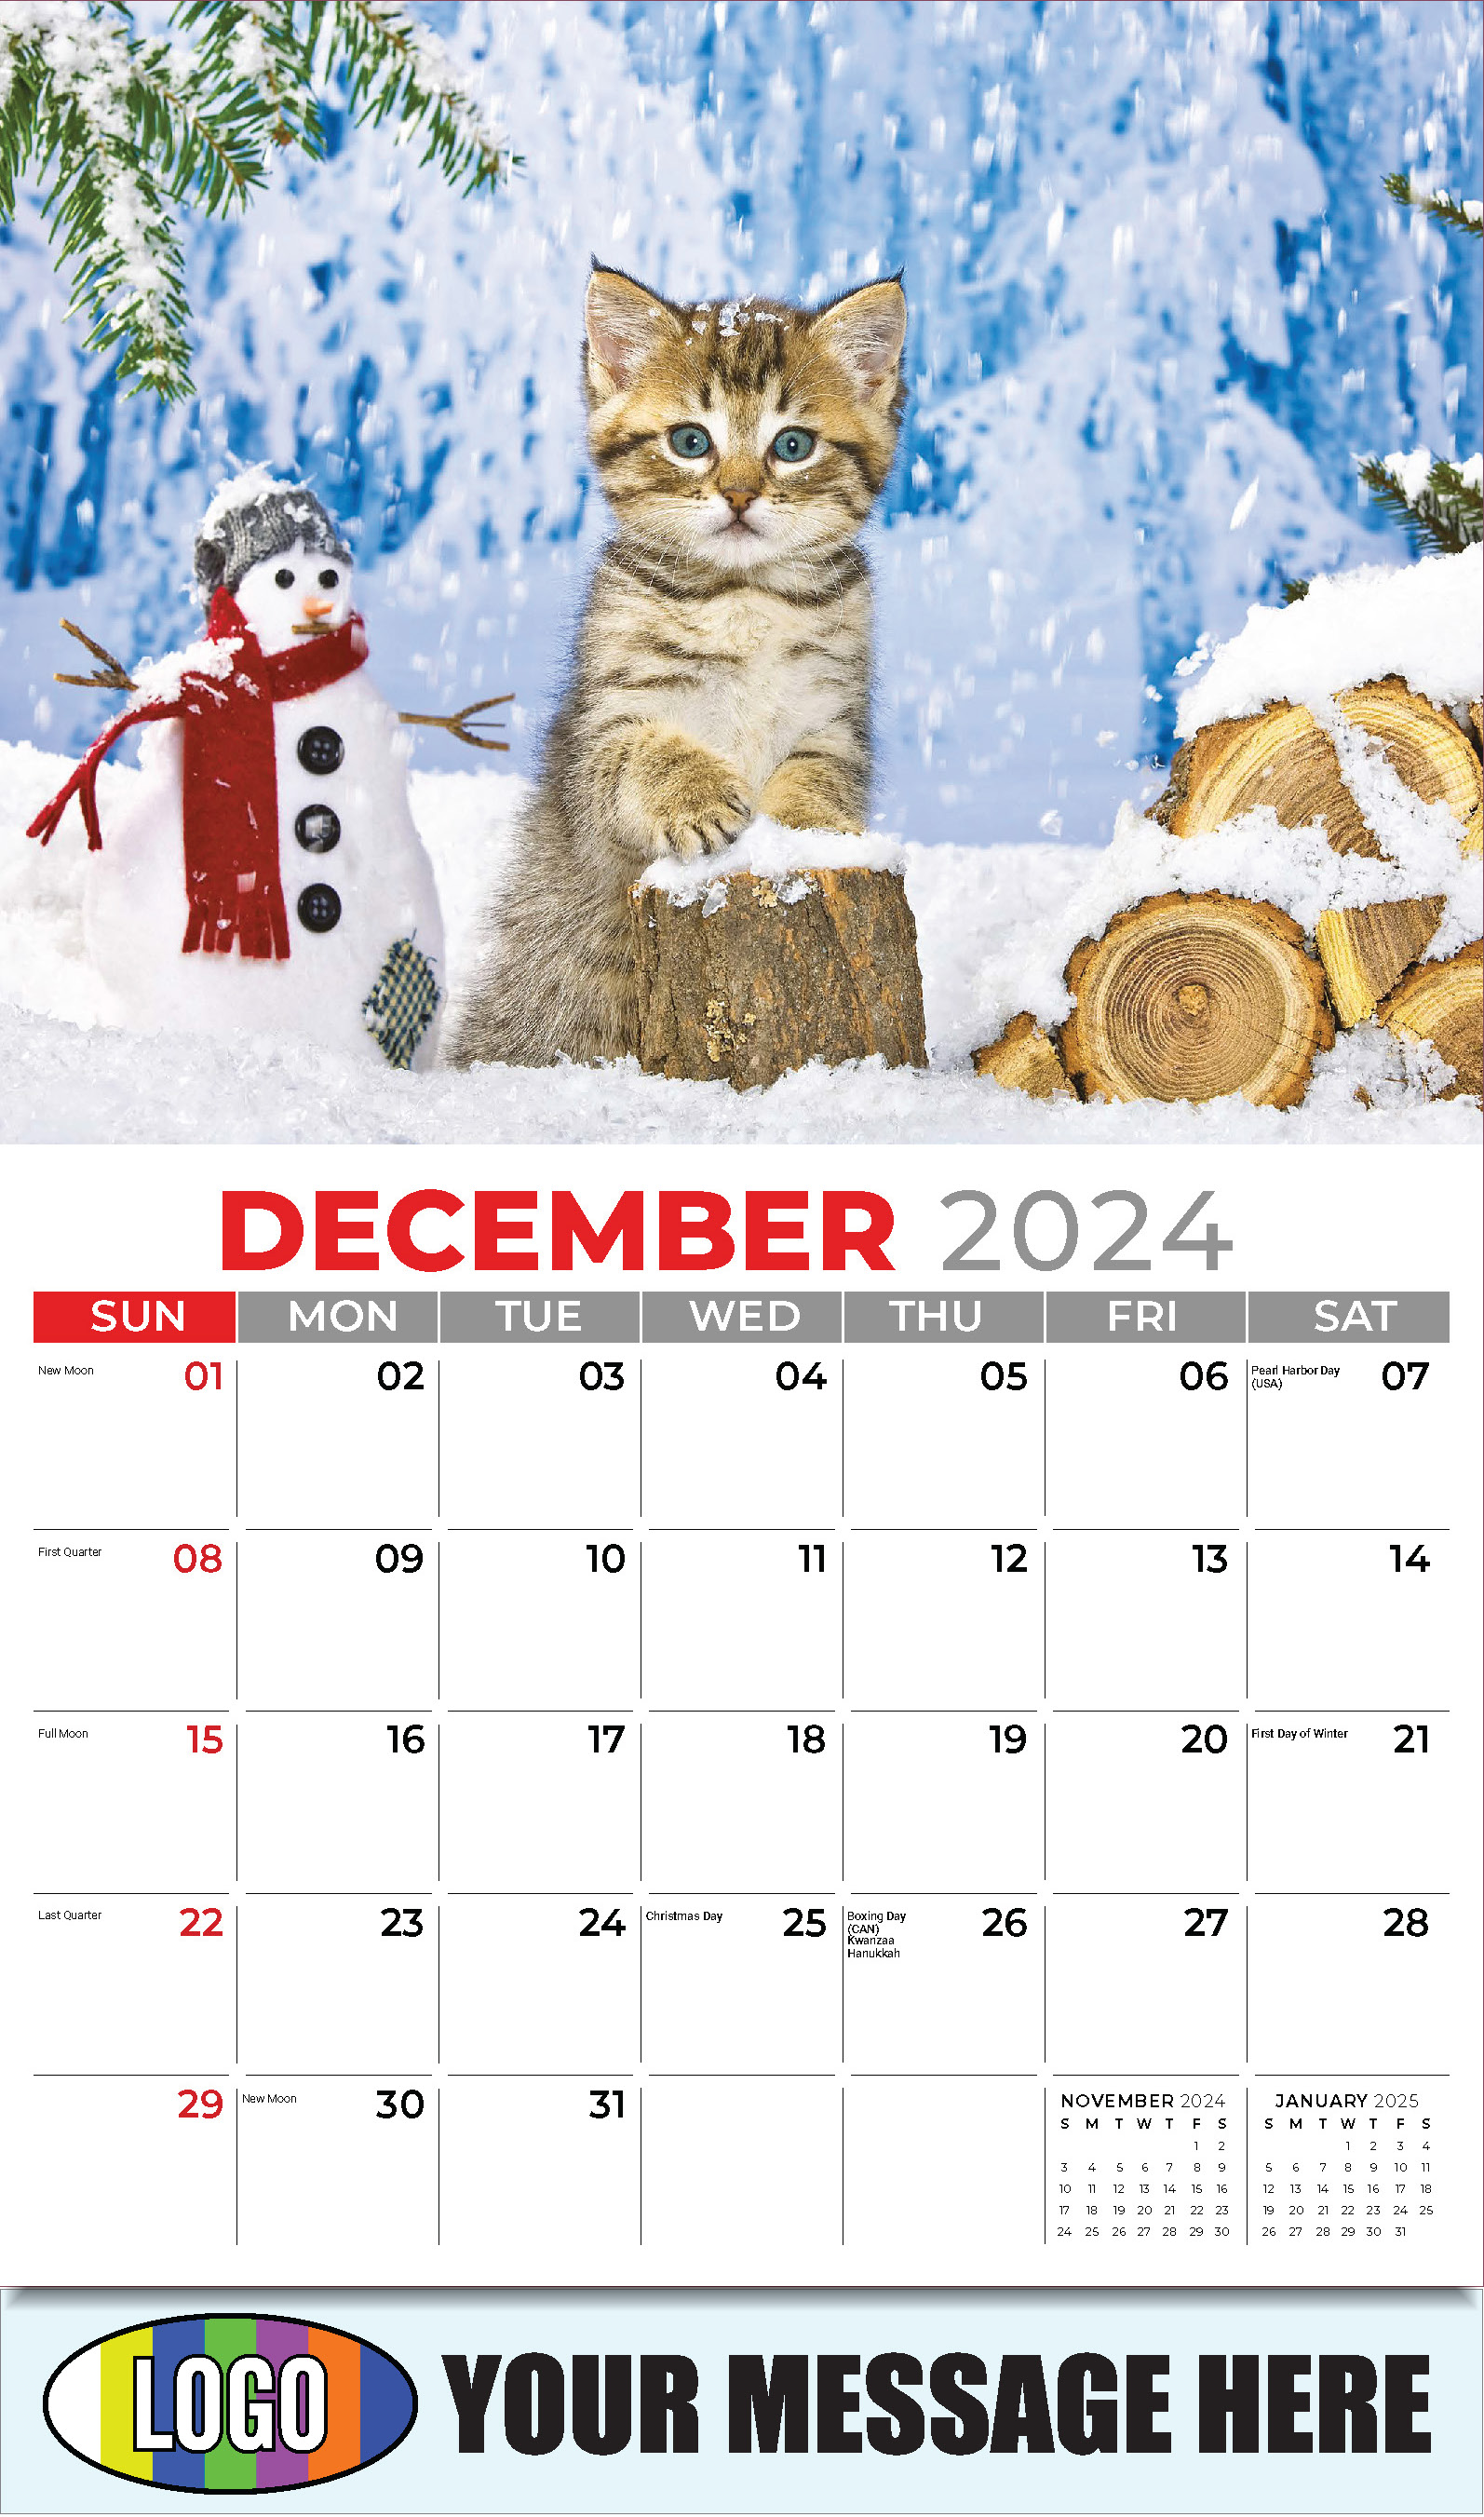 Kittens 2025 Business Promo Wall Calendar - December_a